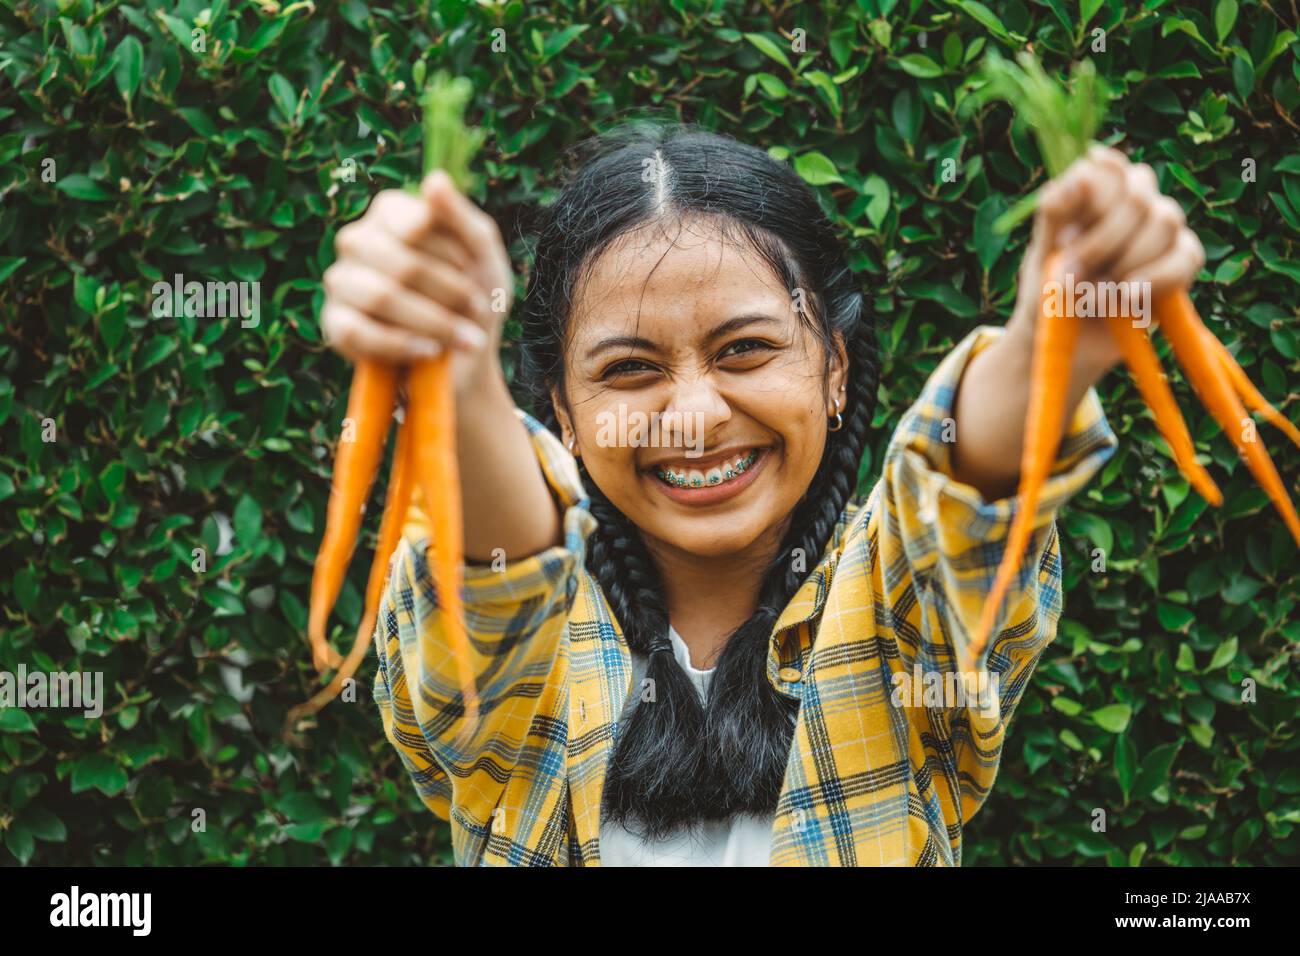 Essen vegan Gemüse für gesunde gut für das Leben Konzept. Junge Teenager Hand hält Baby Karotte glückliches Lächeln. Stockfoto